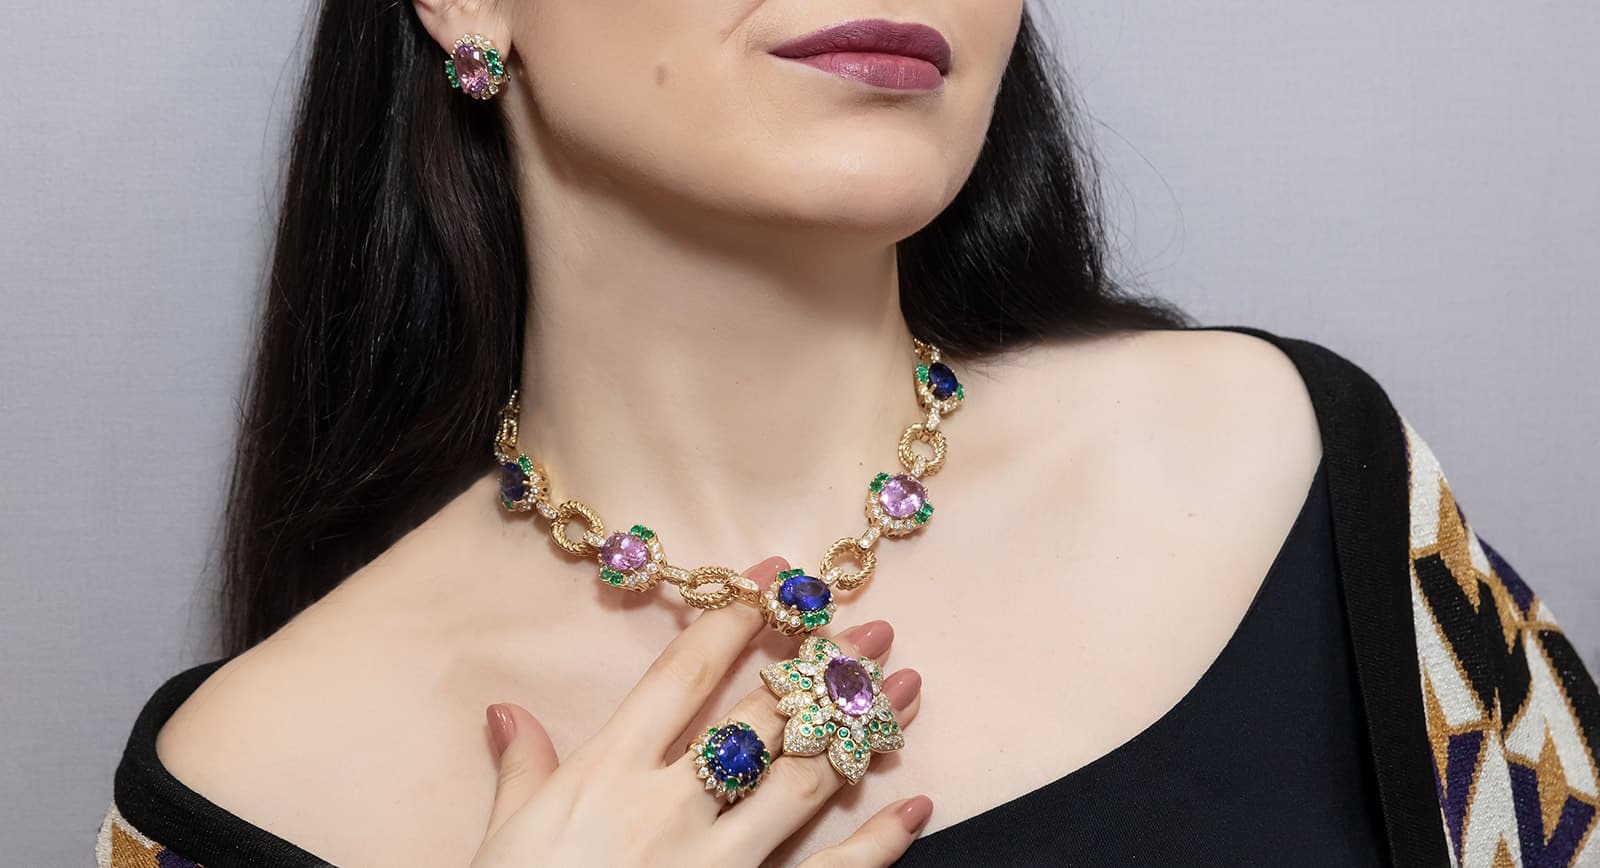  Veschetti ‘Ortensia’ jewellery suite